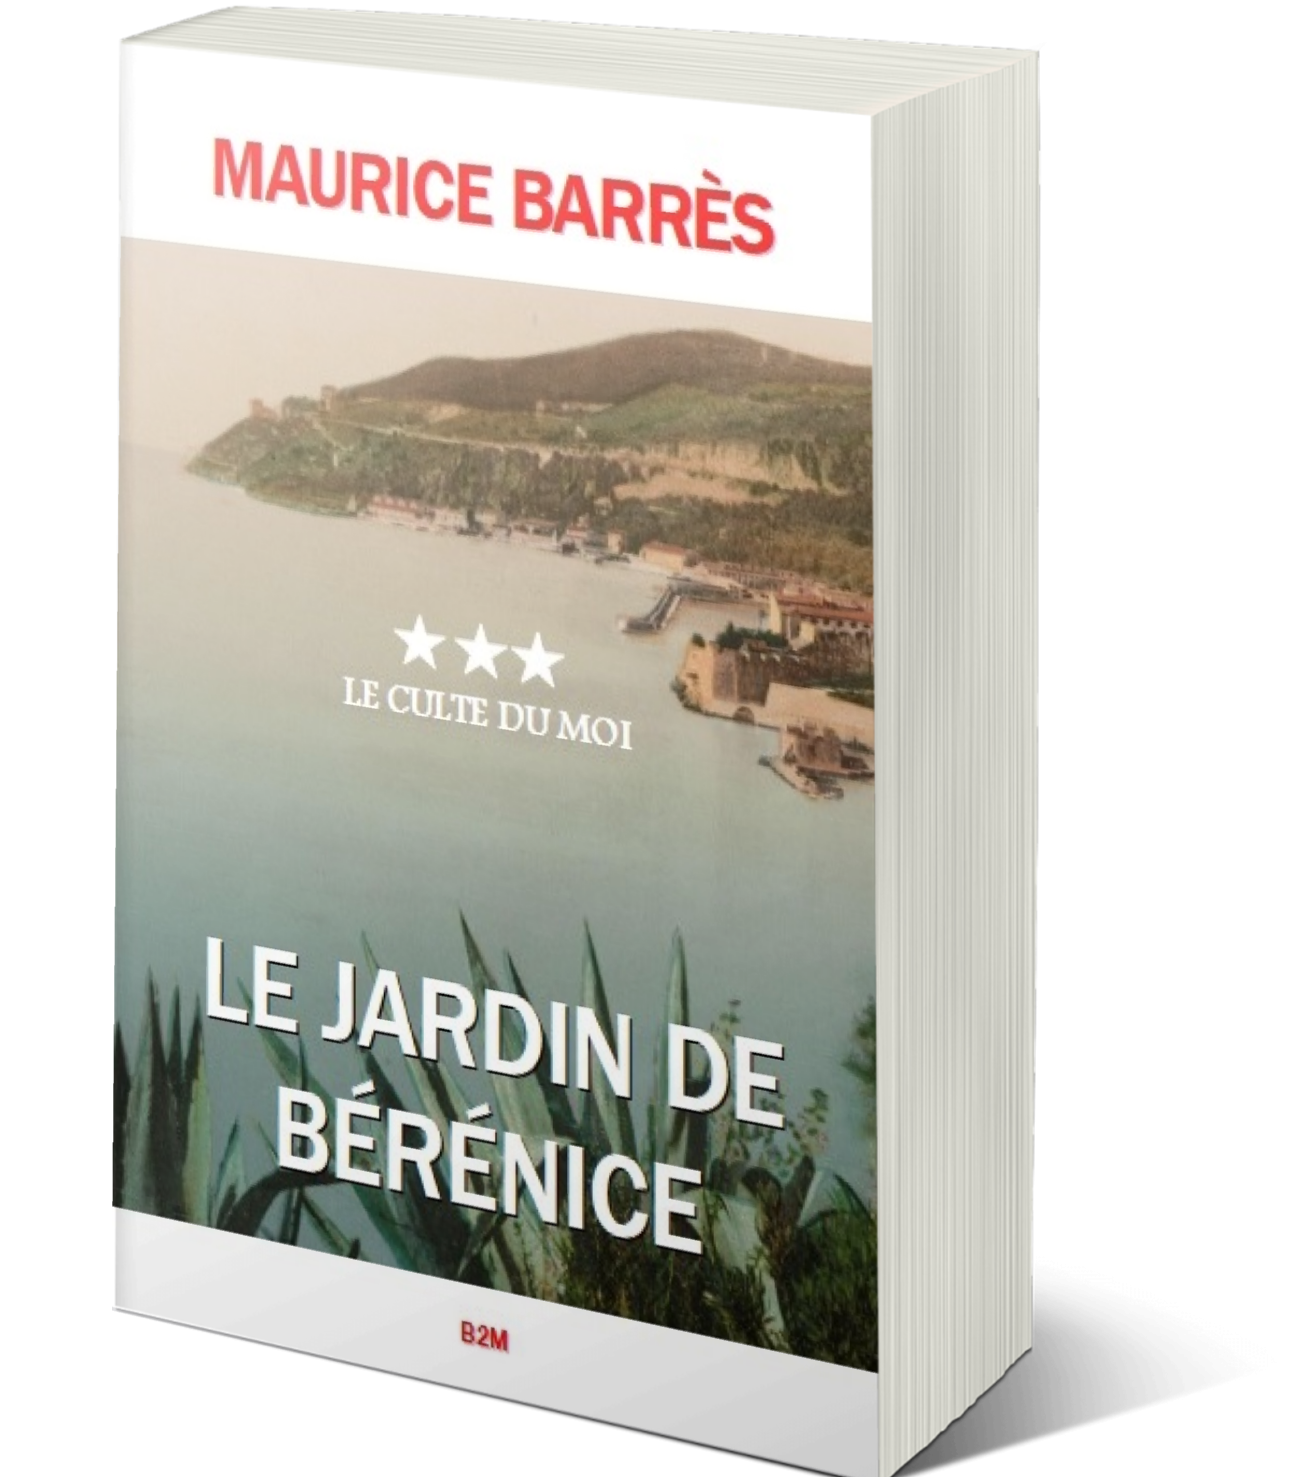 You are currently viewing 2023 année du centenaire de la mort de Maurice Barrès : Le Jardin de Bérénice, troisième et ultime opus du « Culte du moi » réédité